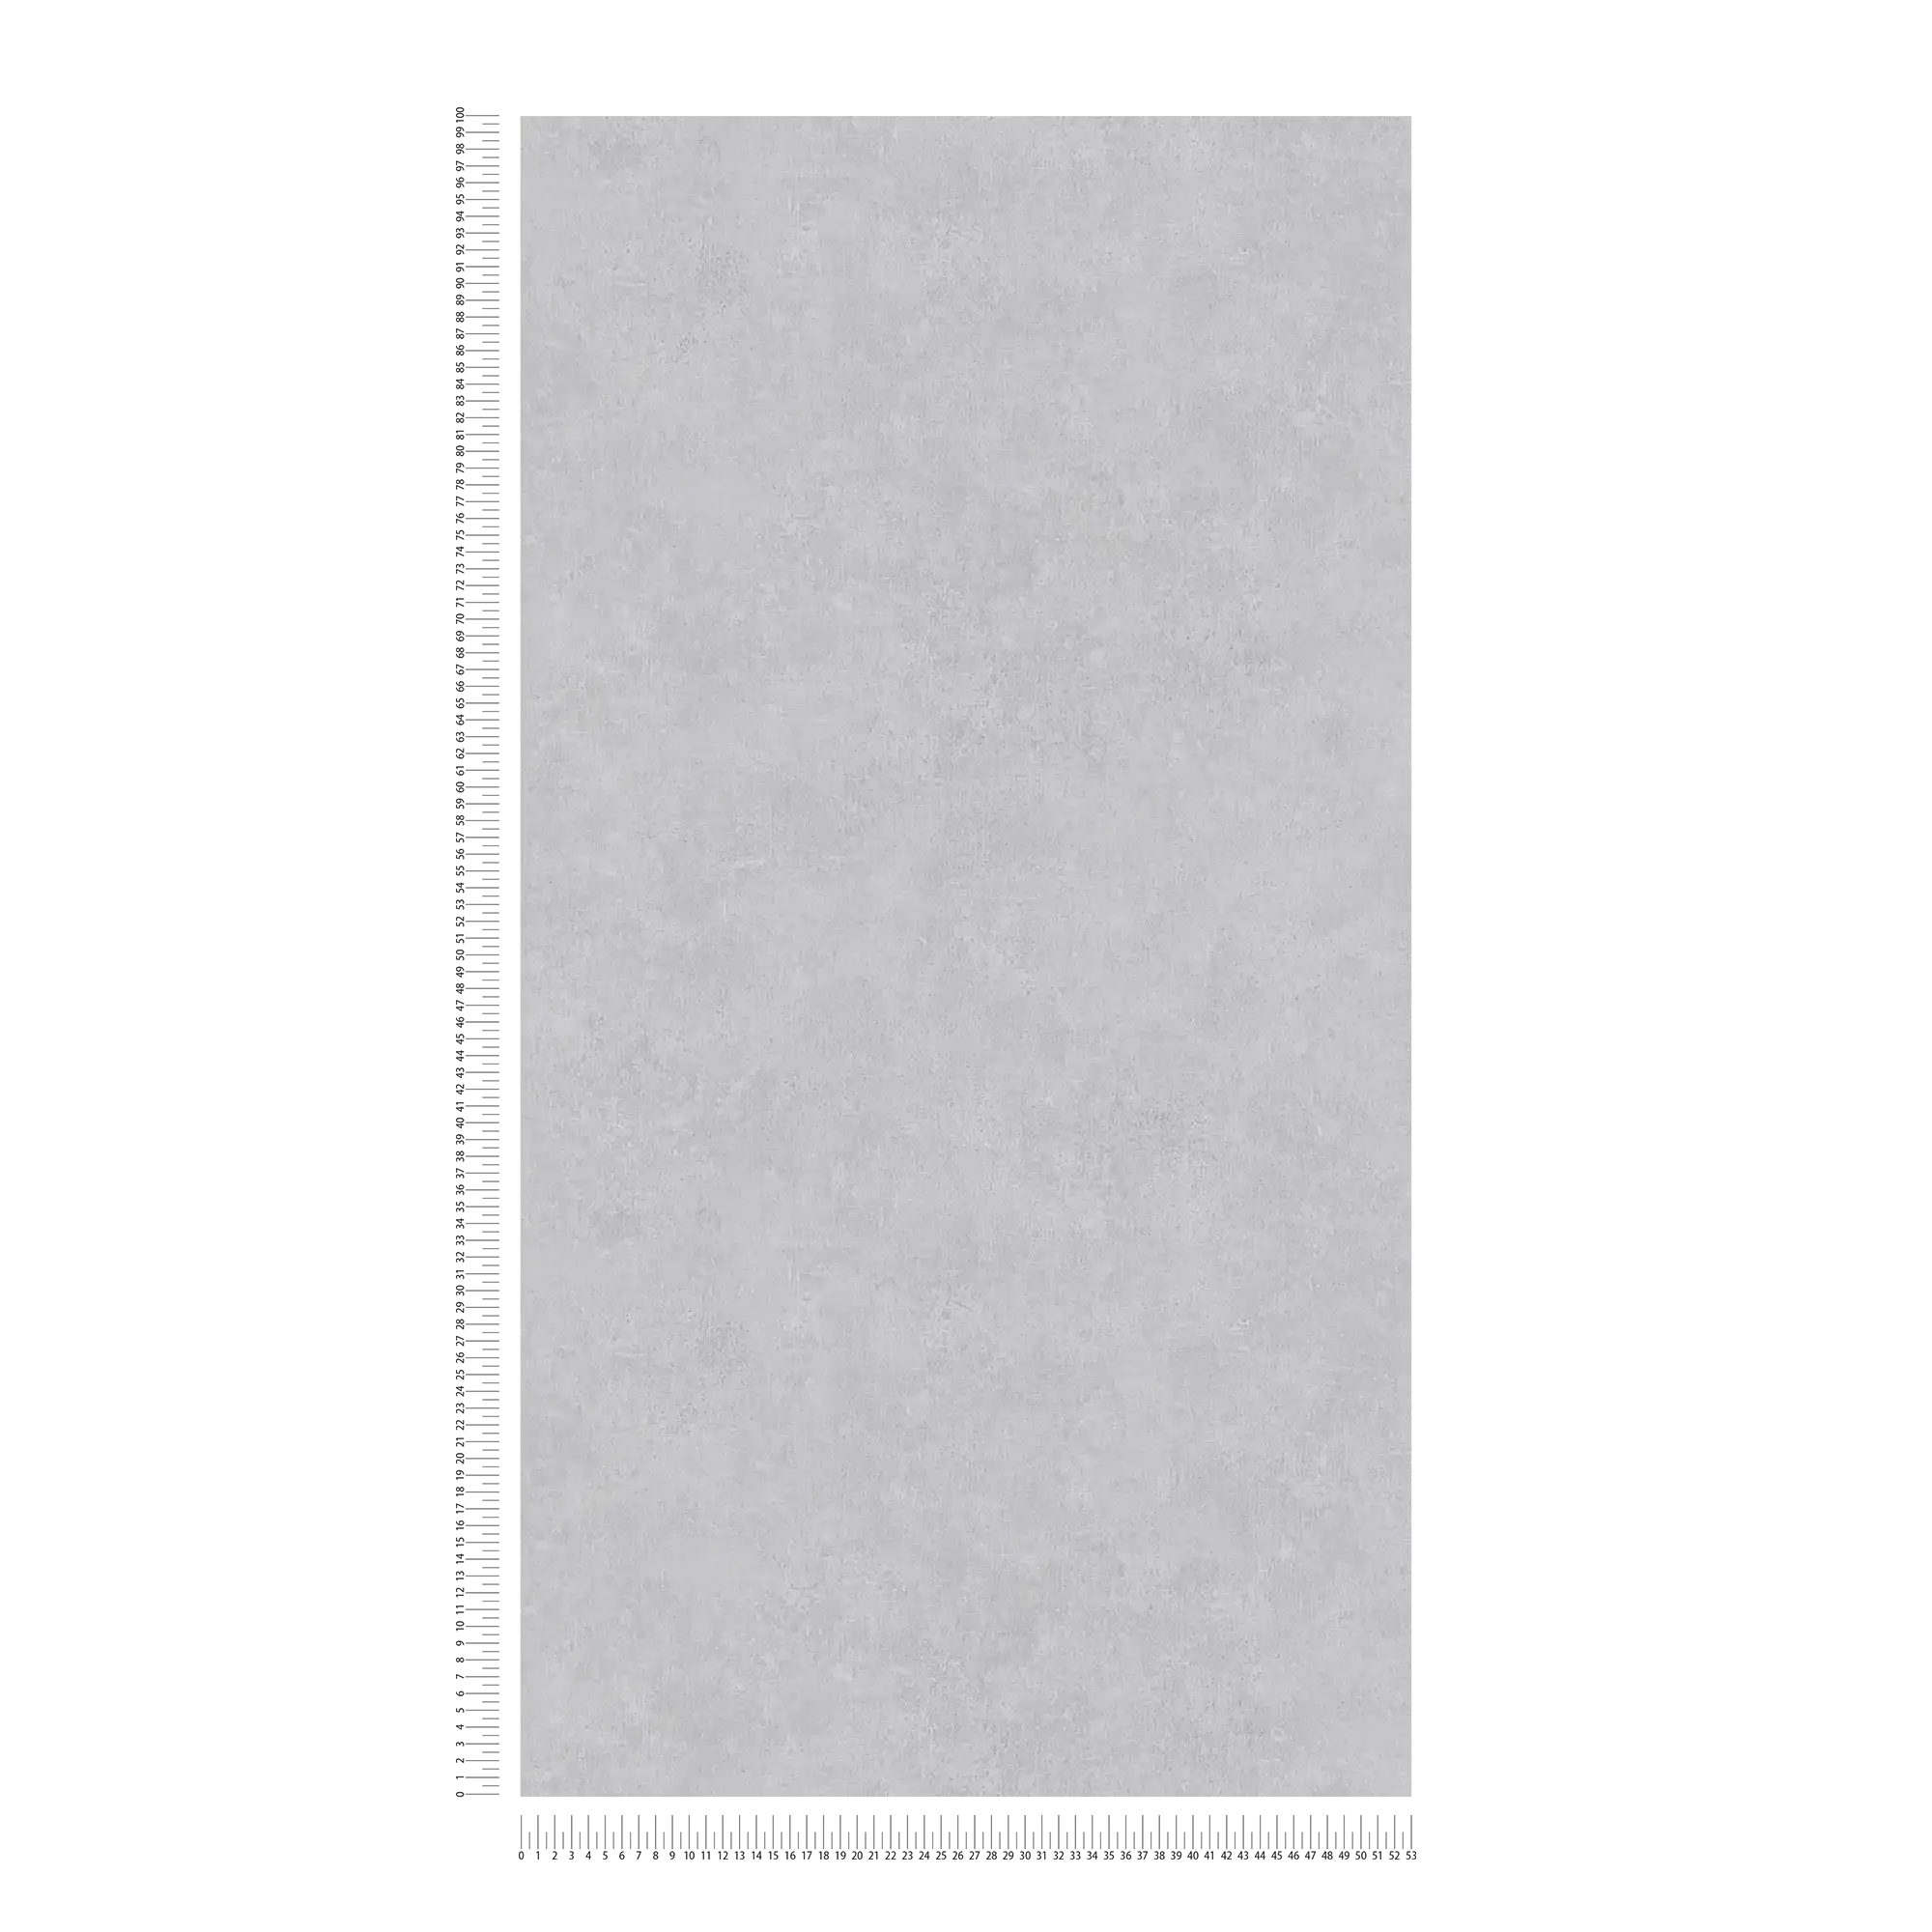             Eenheidsbehang met ton-sur-ton patroon in used look - grijs
        